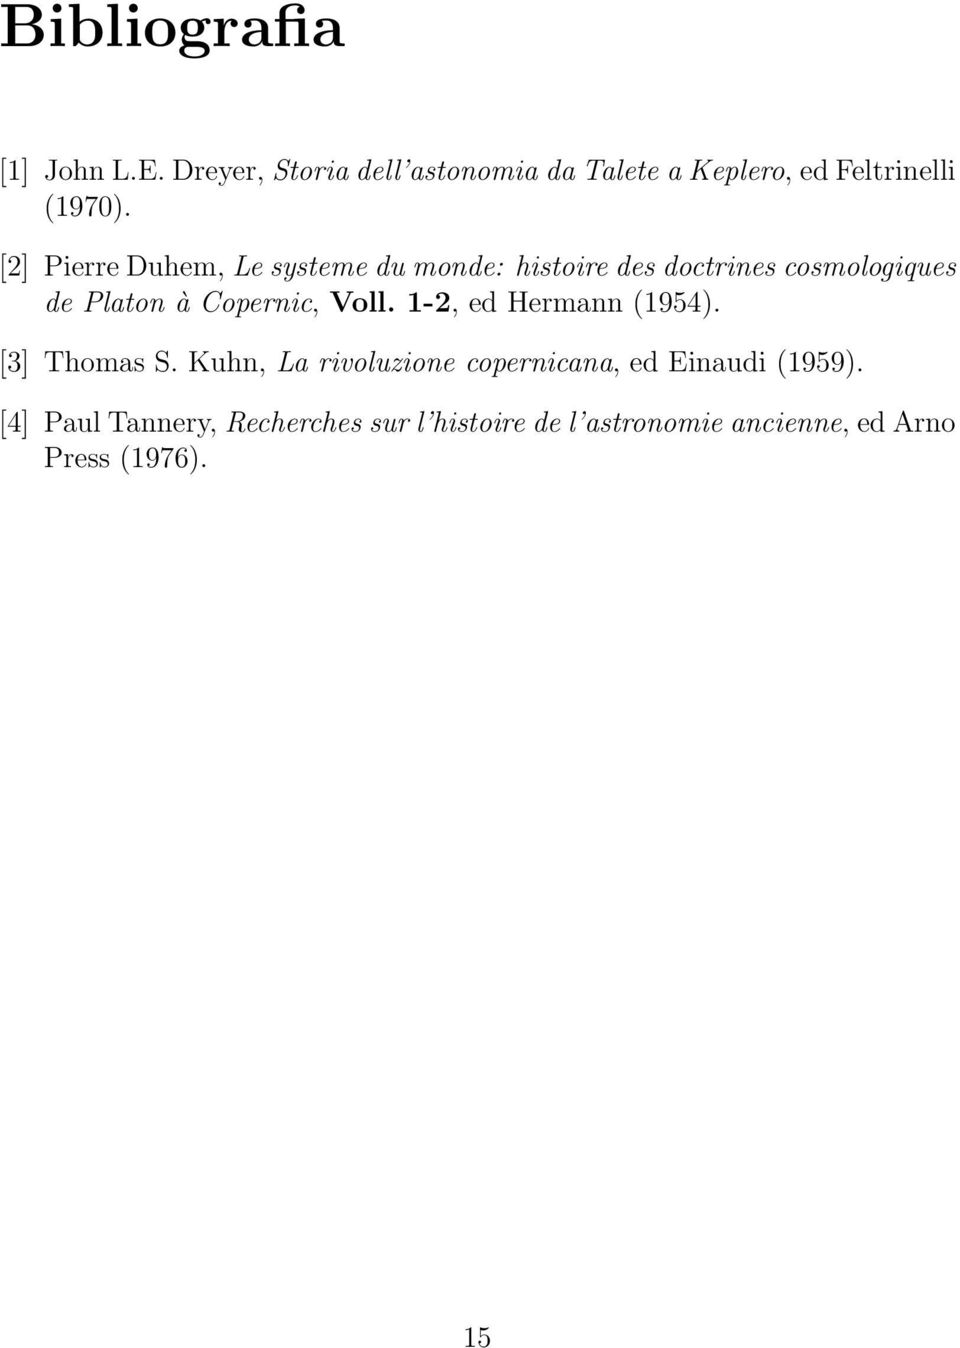 [2] Pierre Duhem, Le systeme du monde: histoire des doctrines cosmologiques de Platon à Copernic,